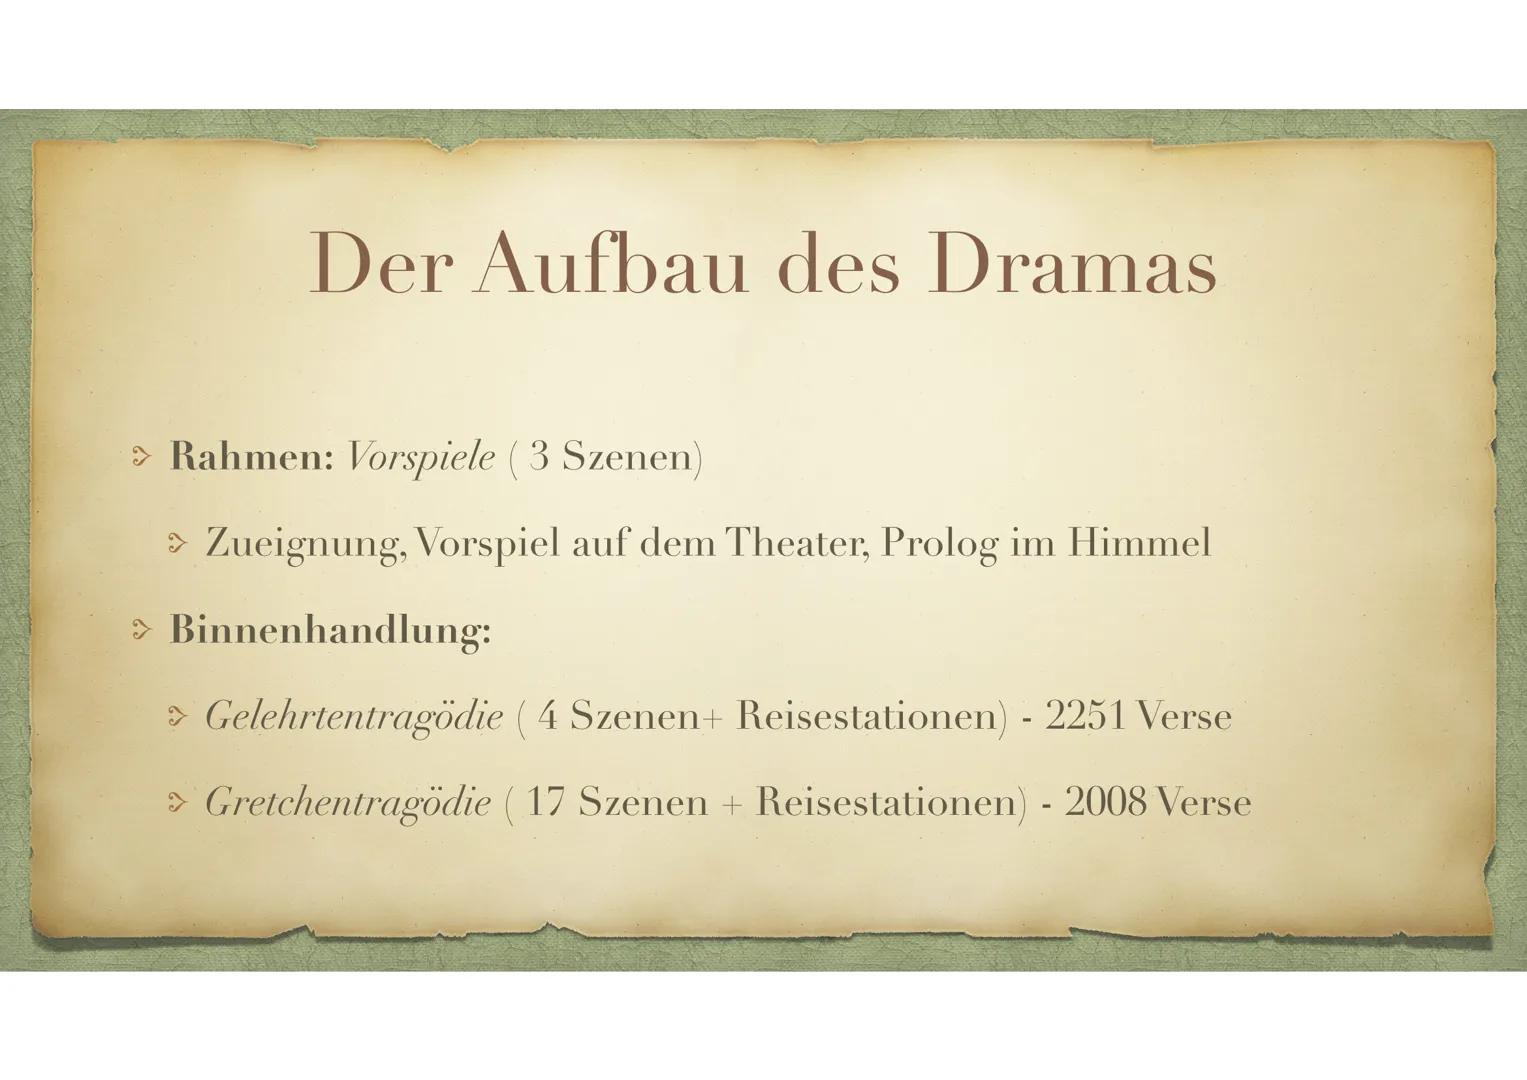 Johann Wolfgang von Goethe
Faust - Der Tragödie erster Teil
(1797-1808) Goethe und der Faust- Stoff
> 1772/75: „Urfaust"
> 1797/1808: Wieder